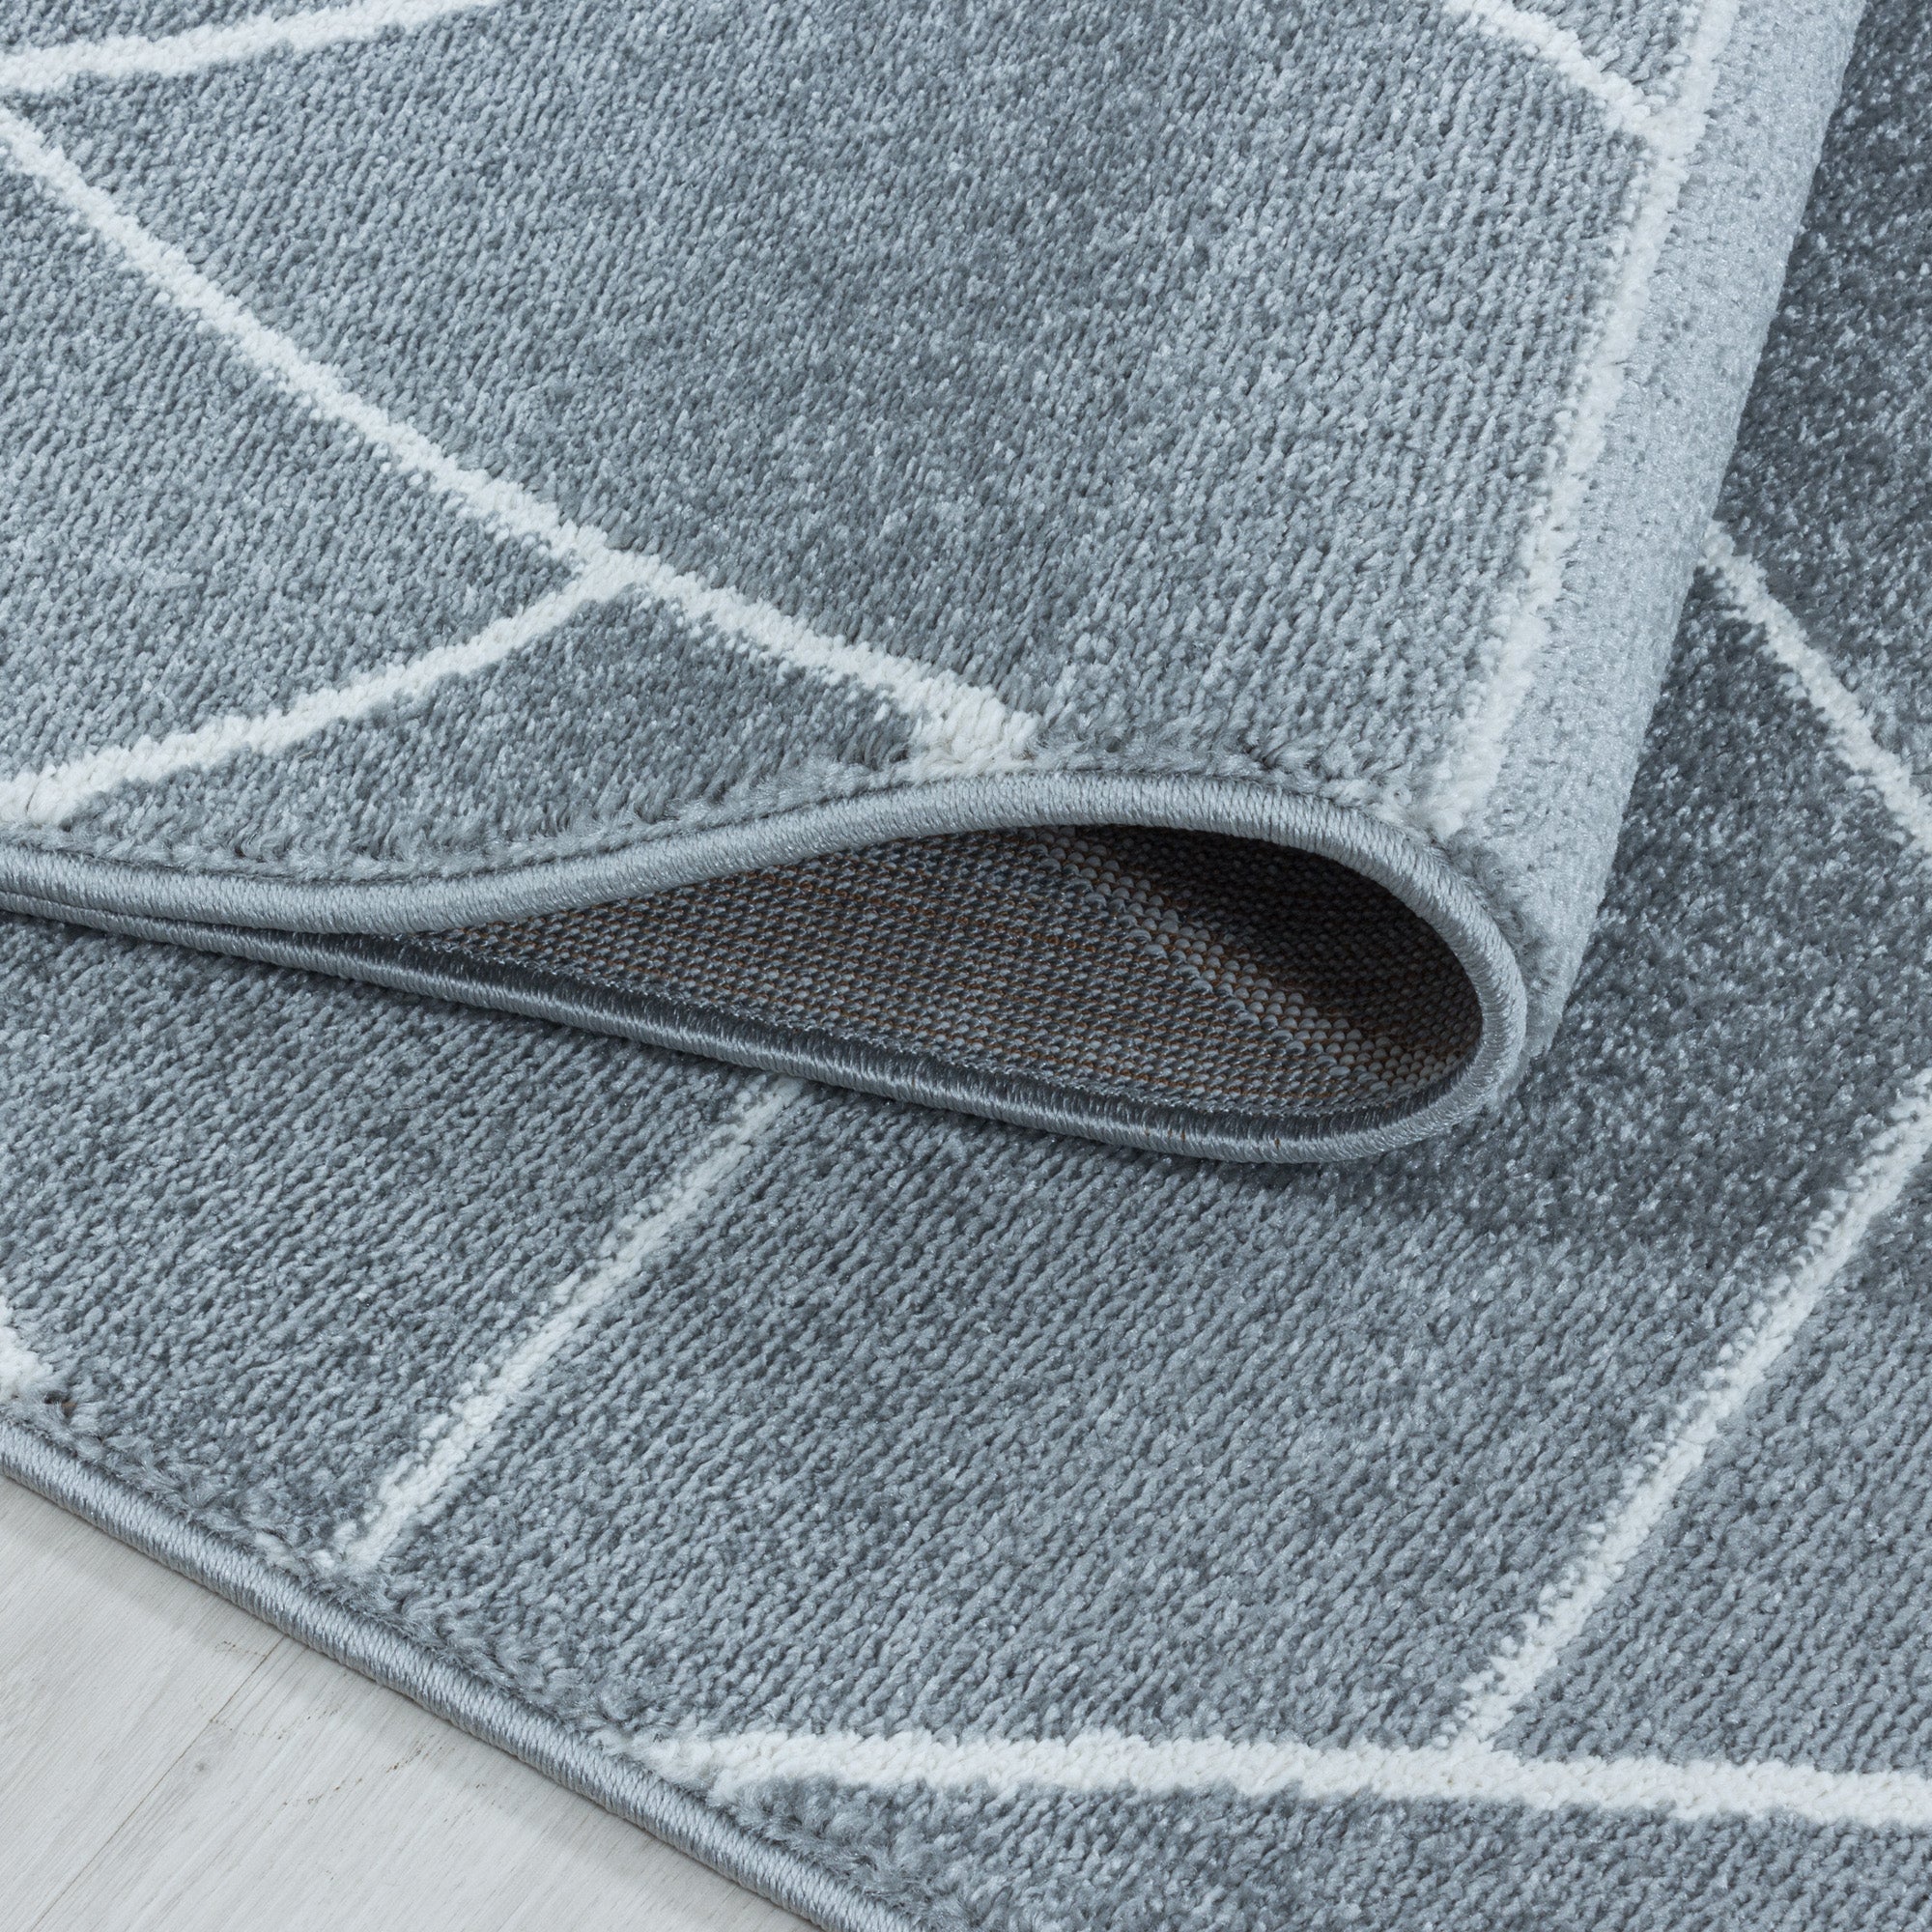 Kurzflor Design Teppich Wohnzimmerteppich Geometrisches Muster Linien Grau